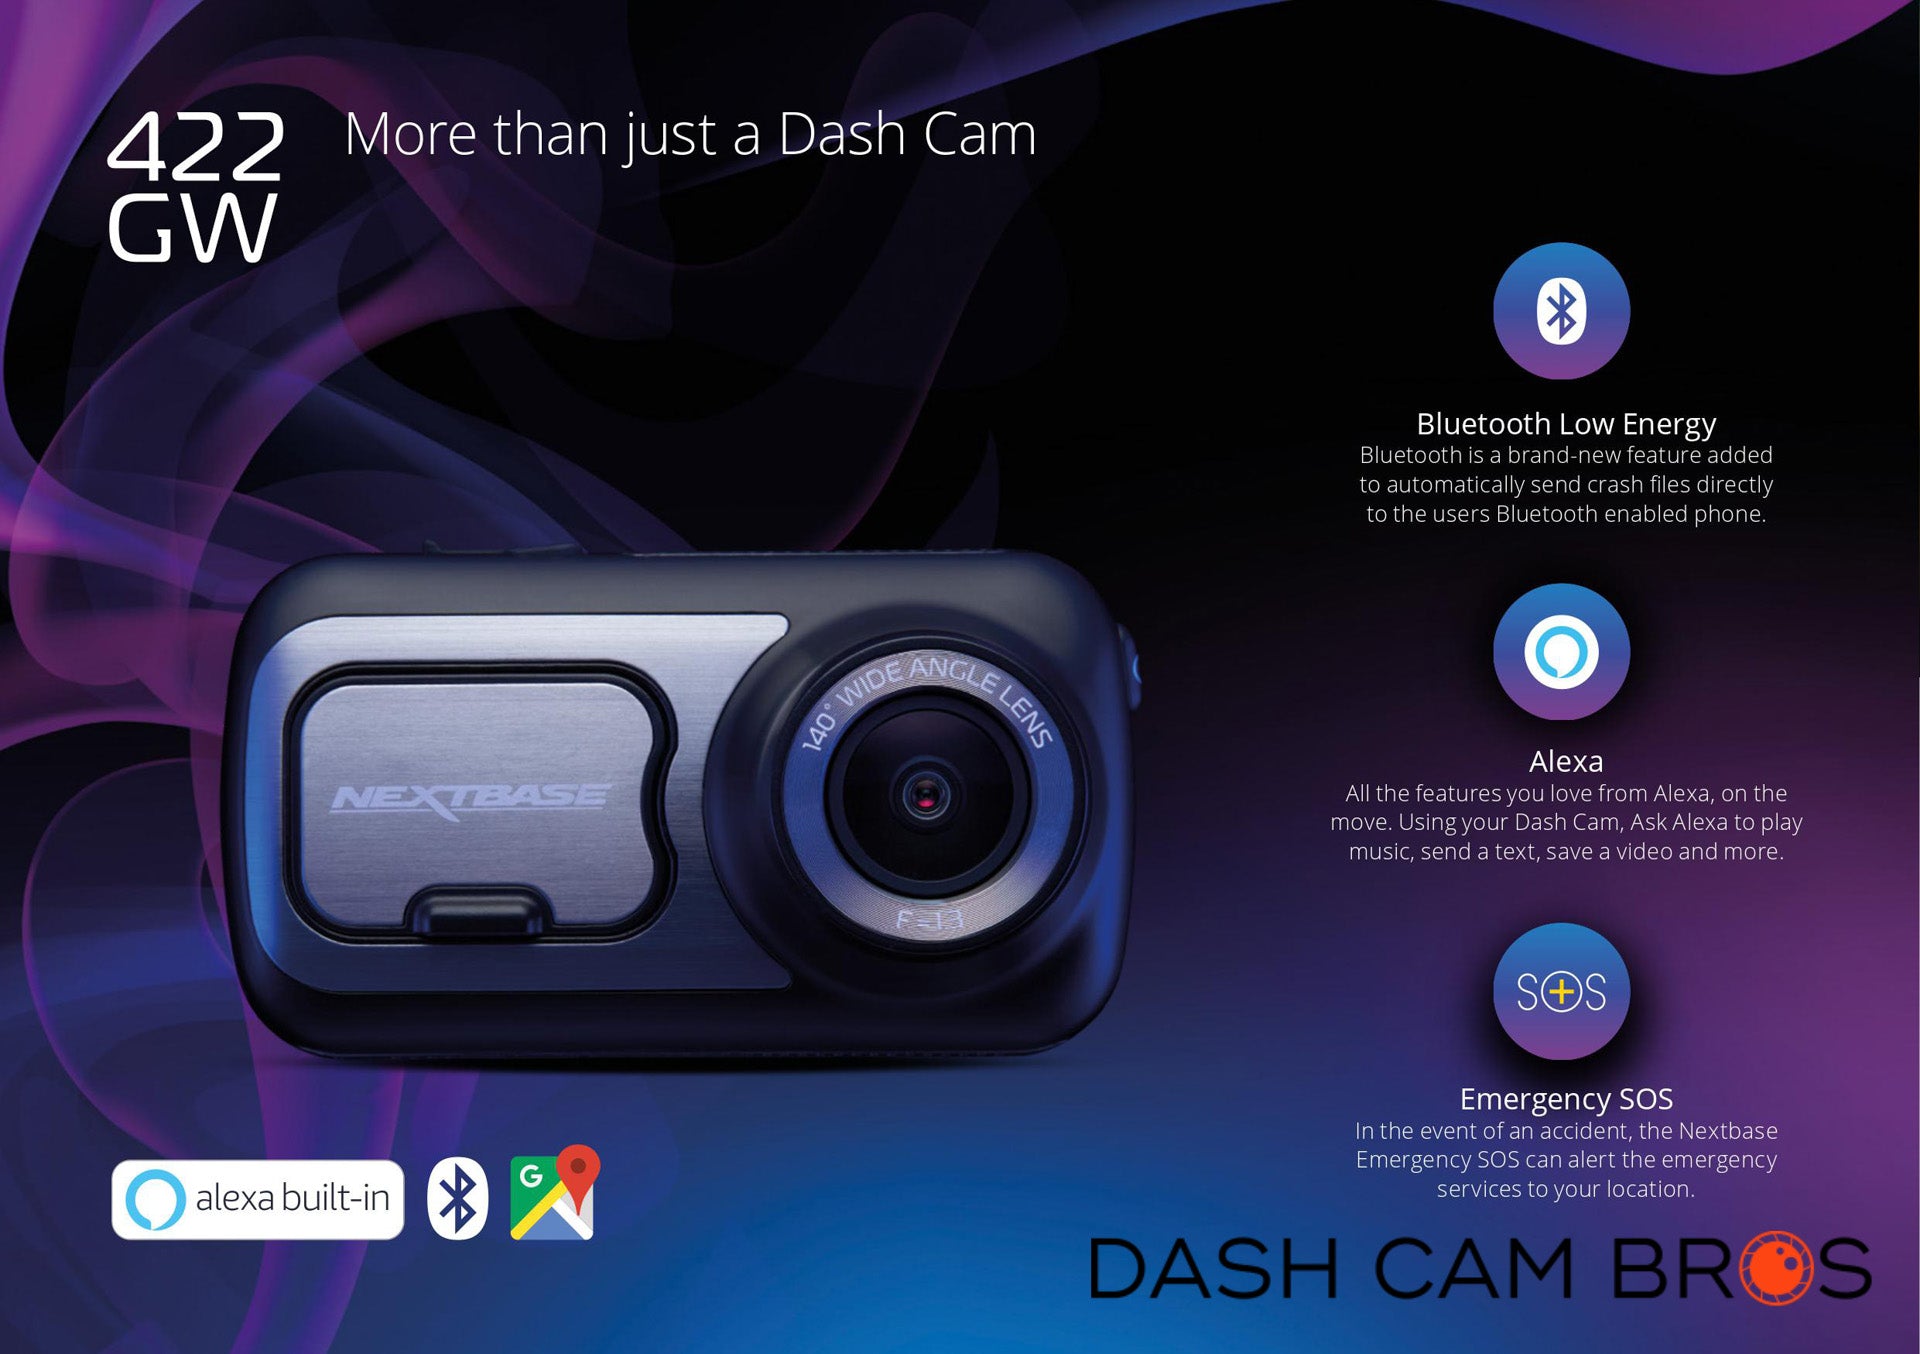 http://dashcambros.com/cdn/shop/products/DashcamBros.com-nextbase-422gw-dash-cam-features-benefits-1.jpg?v=1646778693